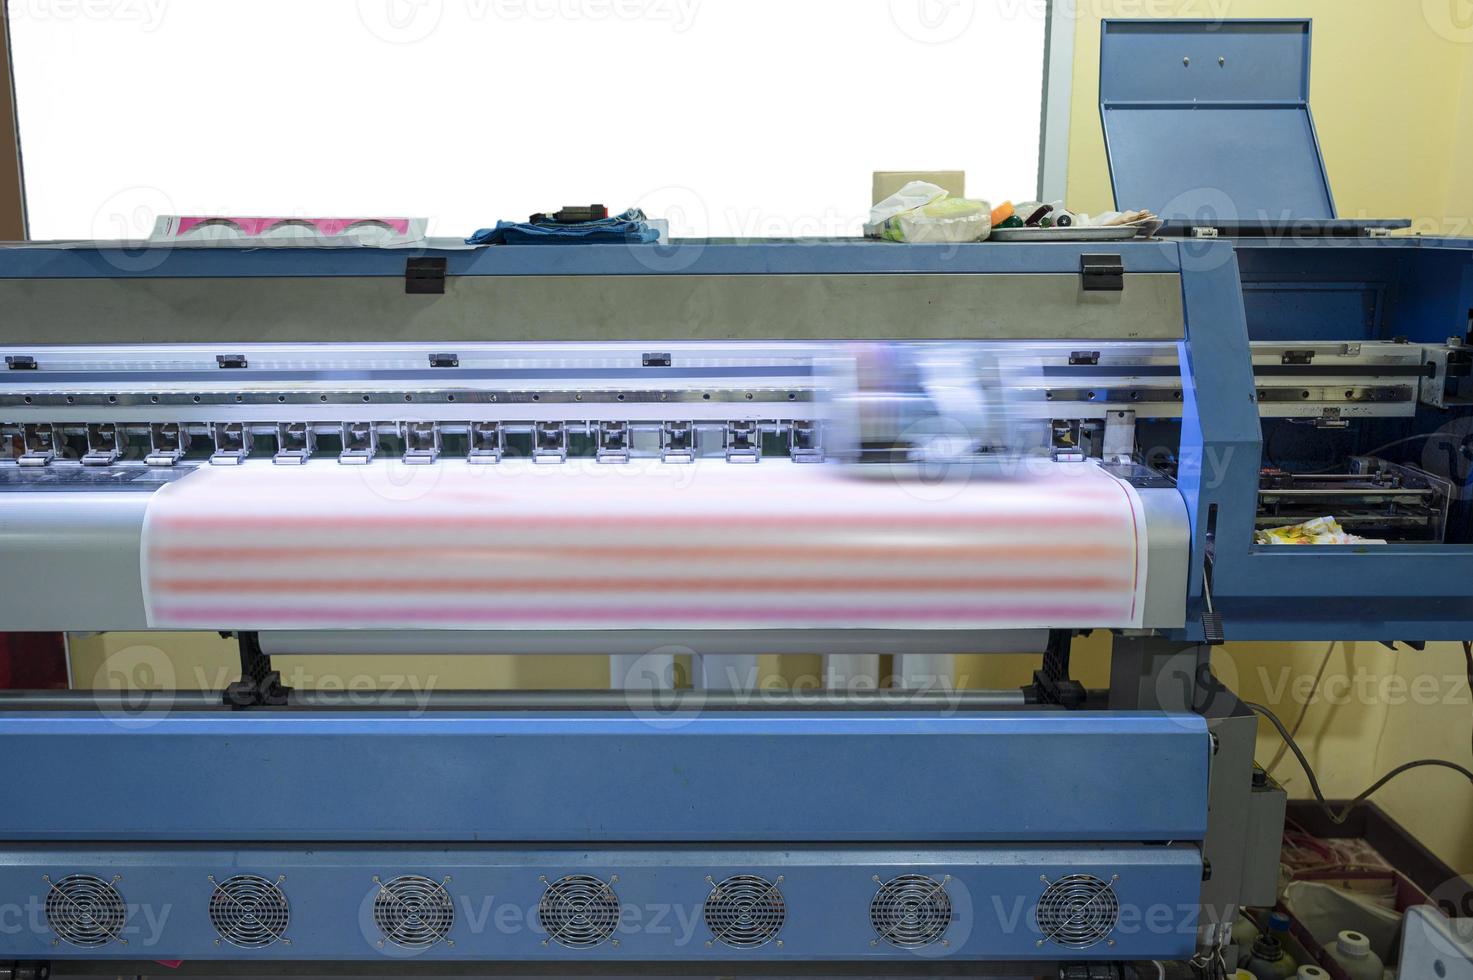 stampante a getto d'inchiostro di grande formato che lavora su fogli di adesivi foto